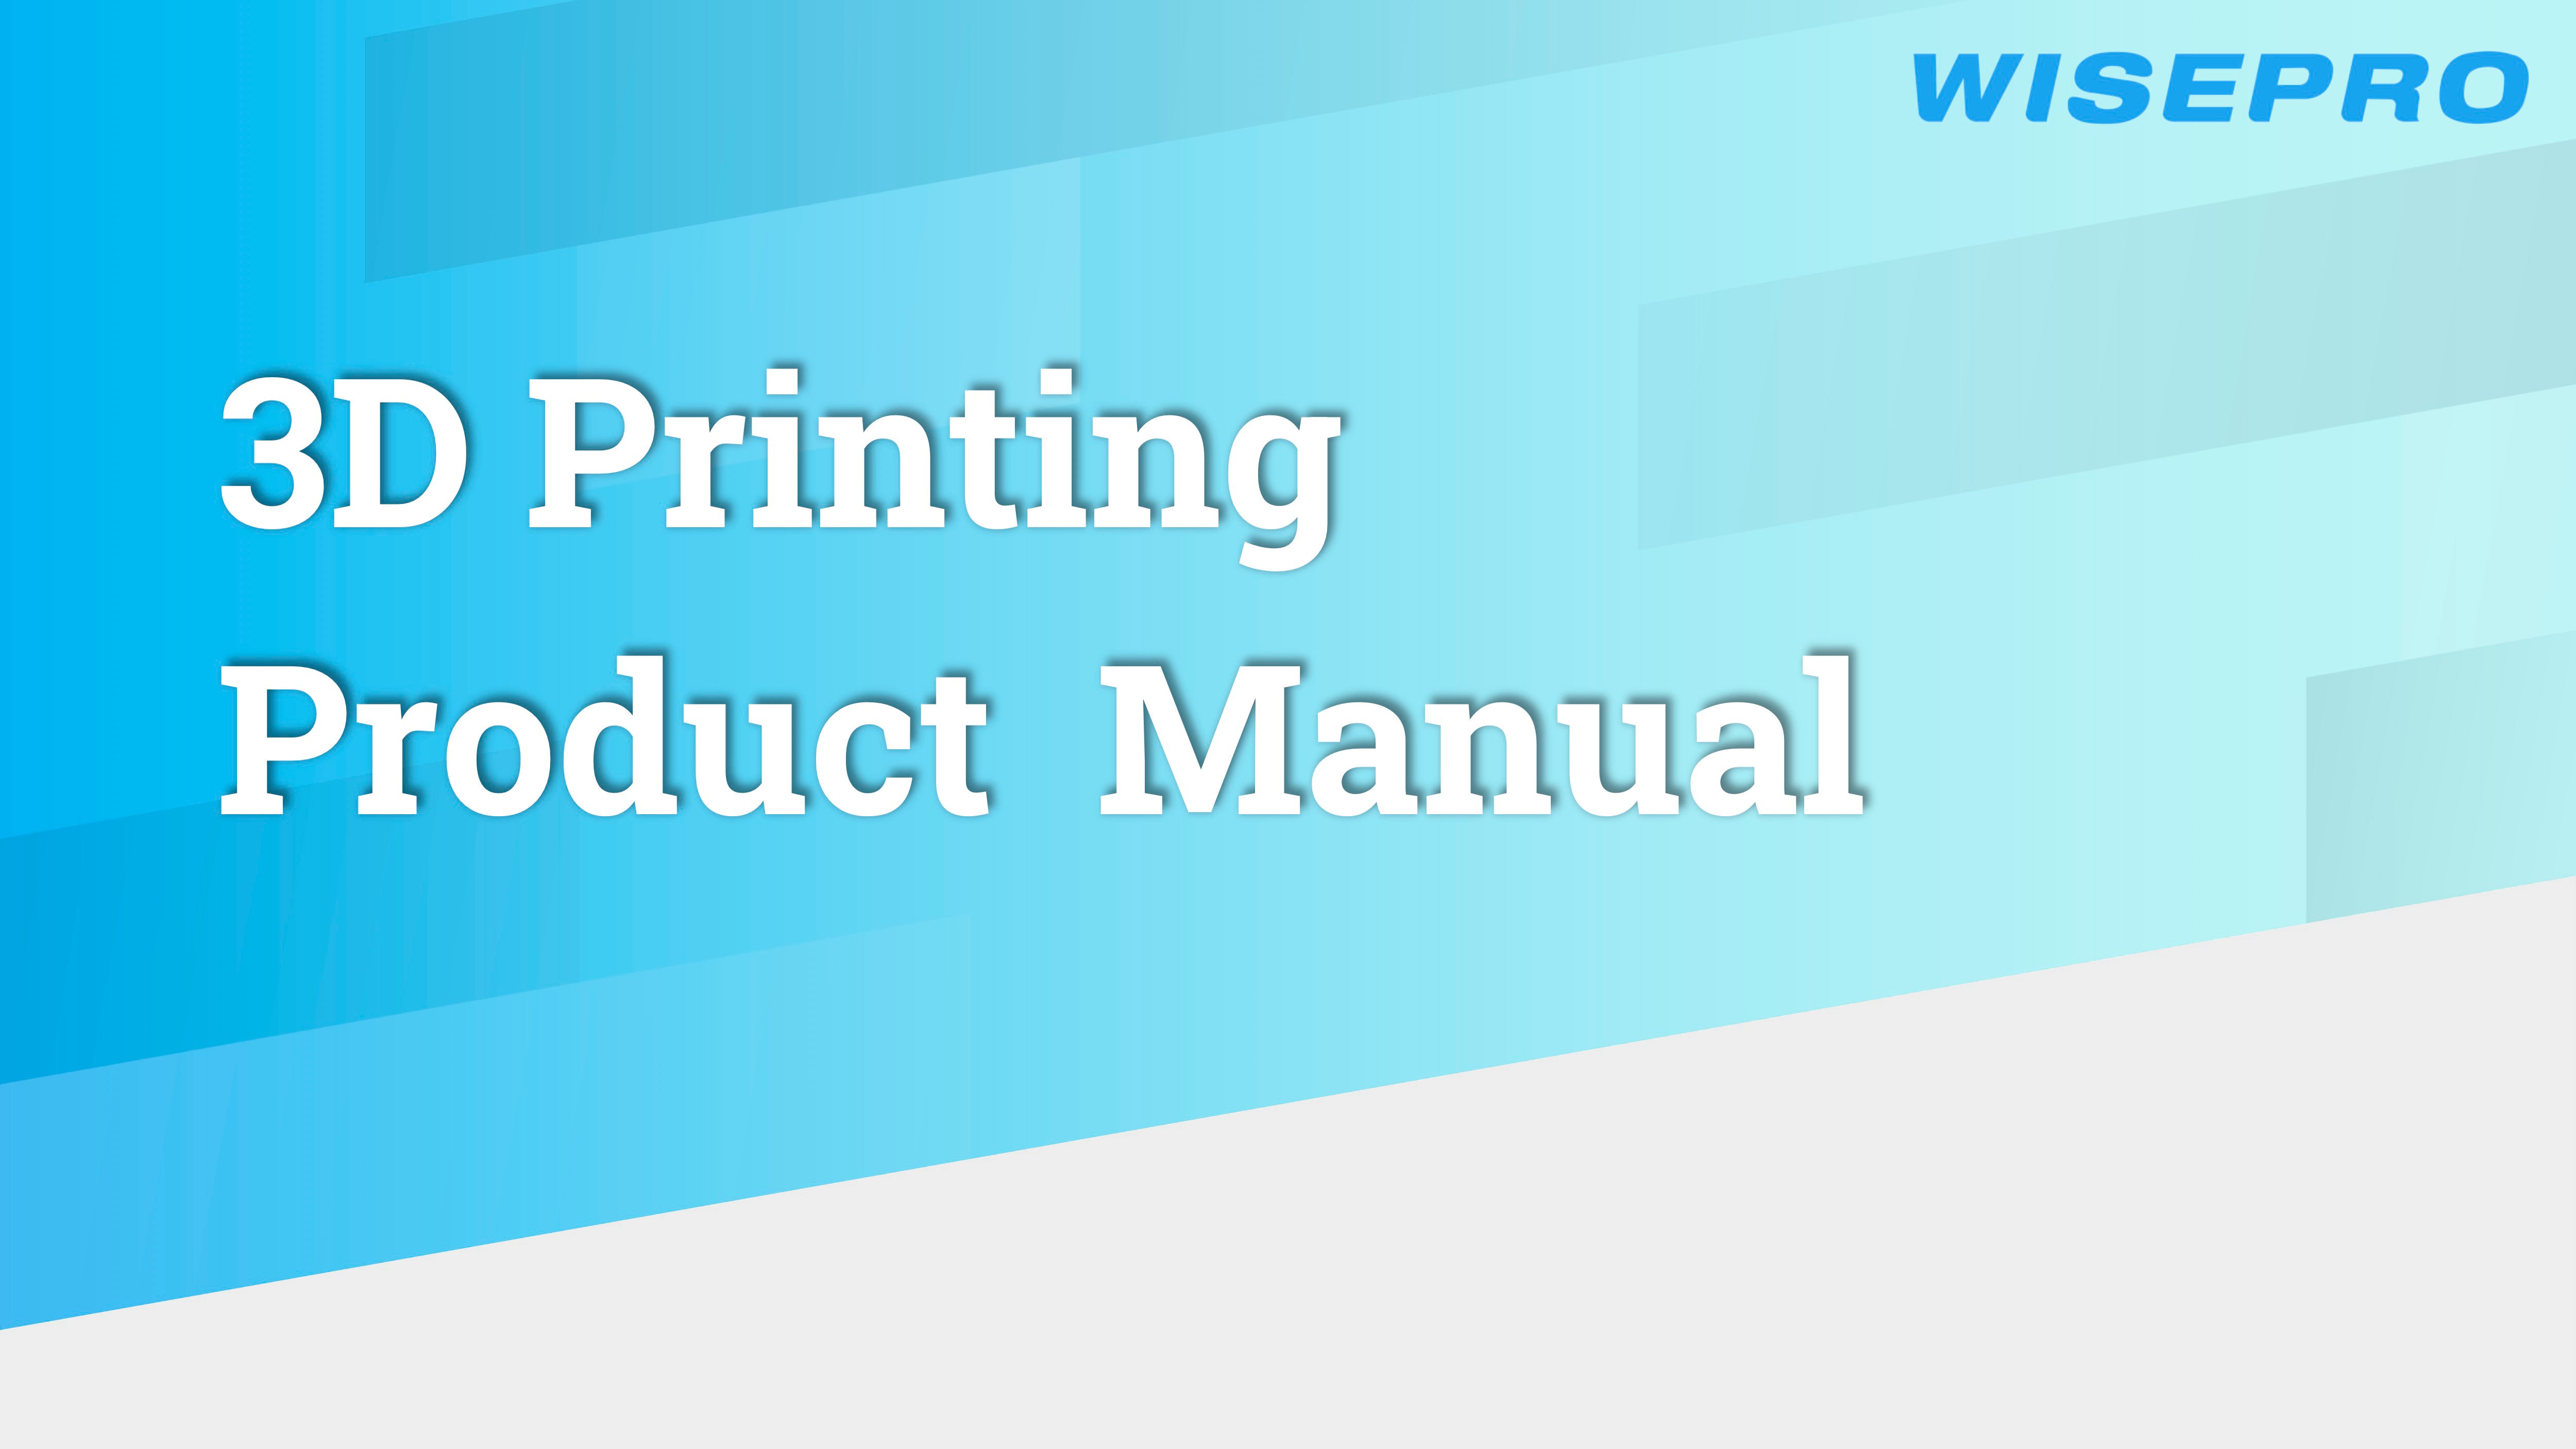 WISEPRO Product Manual